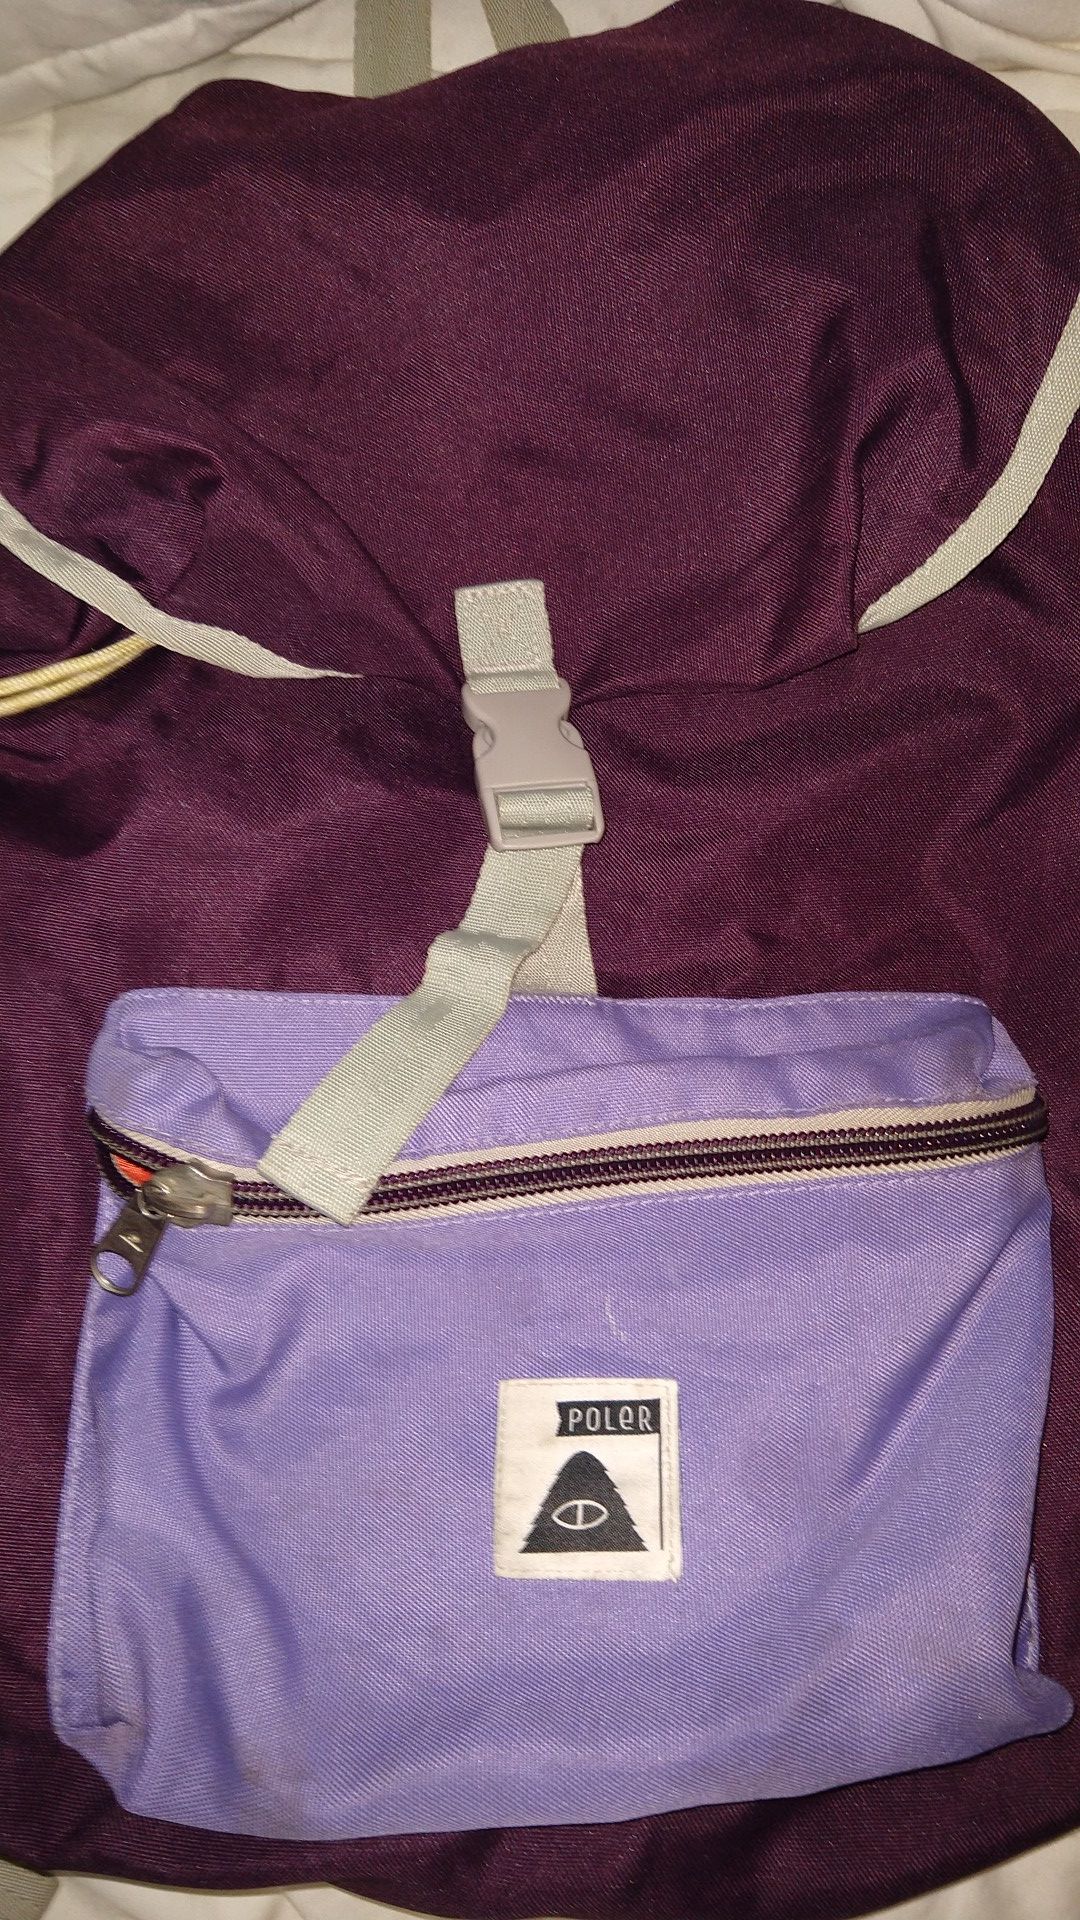 Poler Brand Backpack